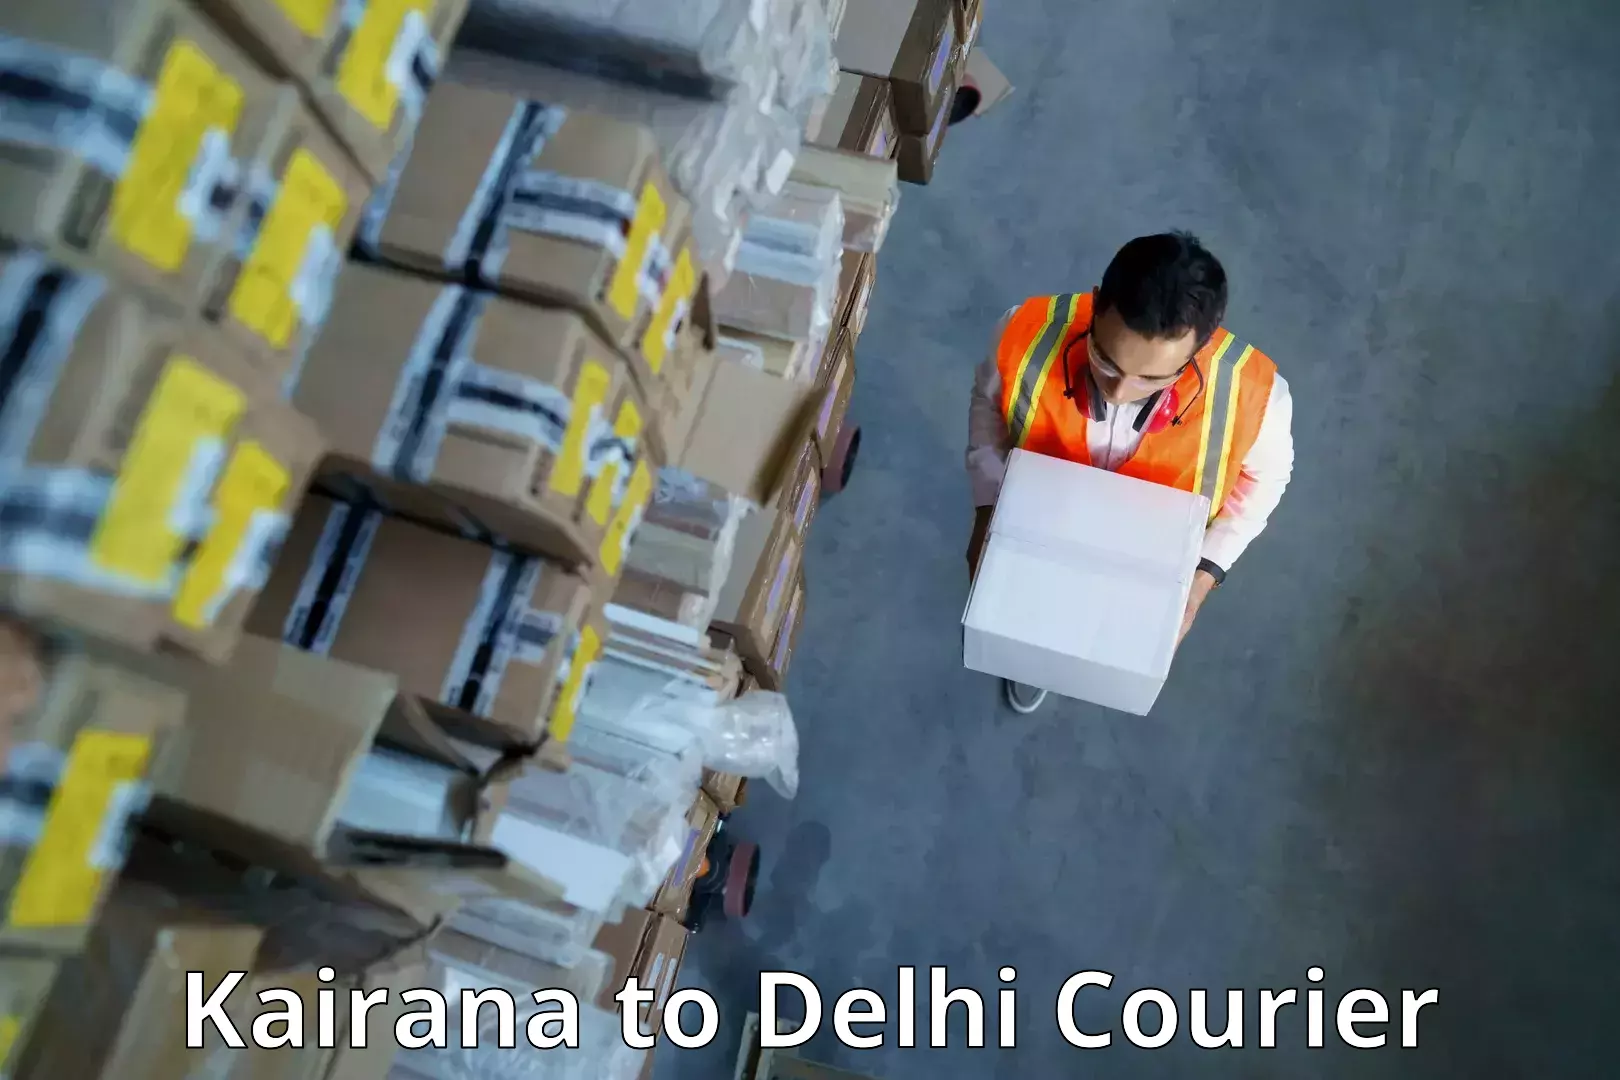 Speedy delivery service Kairana to Delhi